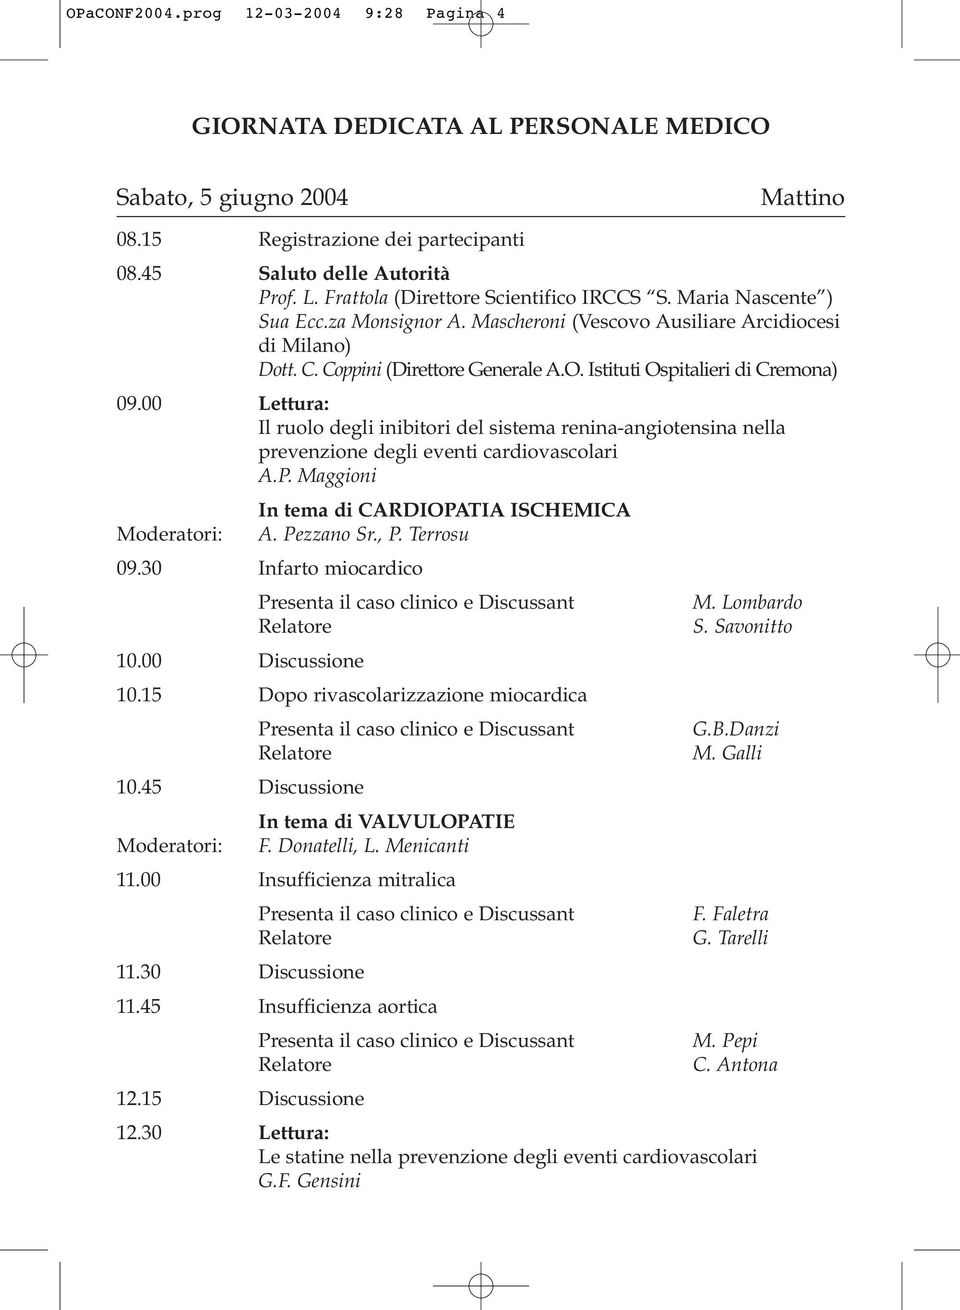 Istituti Ospitalieri di Cremona) 09.00 Lettura: Il ruolo degli inibitori del sistema renina-angiotensina nella prevenzione degli eventi cardiovascolari A.P.